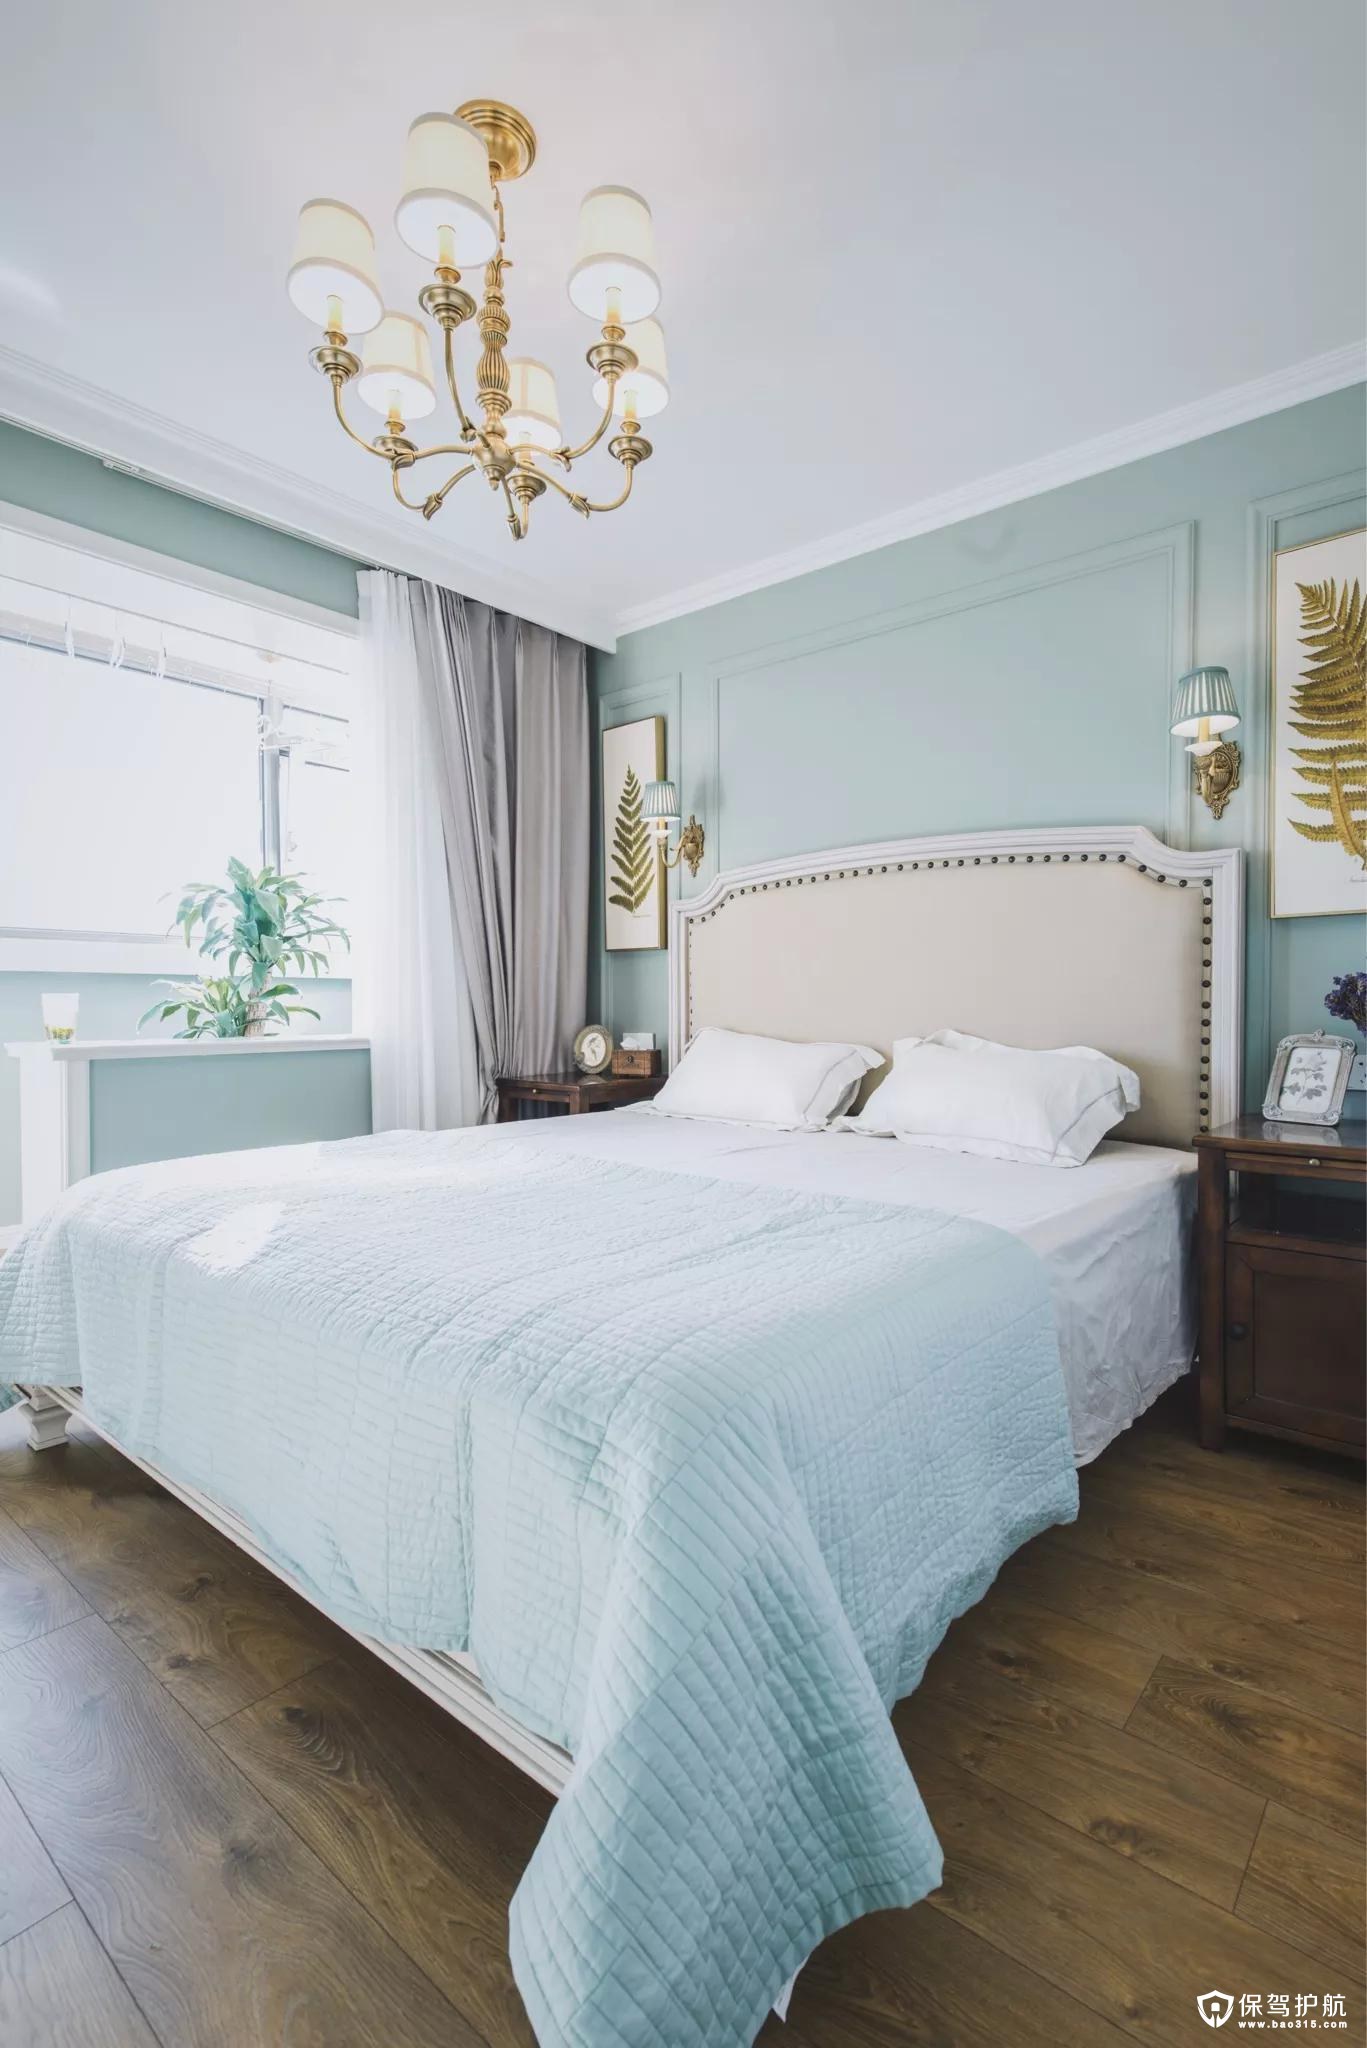 窗边的窗台上摆上清新的绿植，搭配上舒适优雅的床单，呈现出一个安静舒适的氛围。